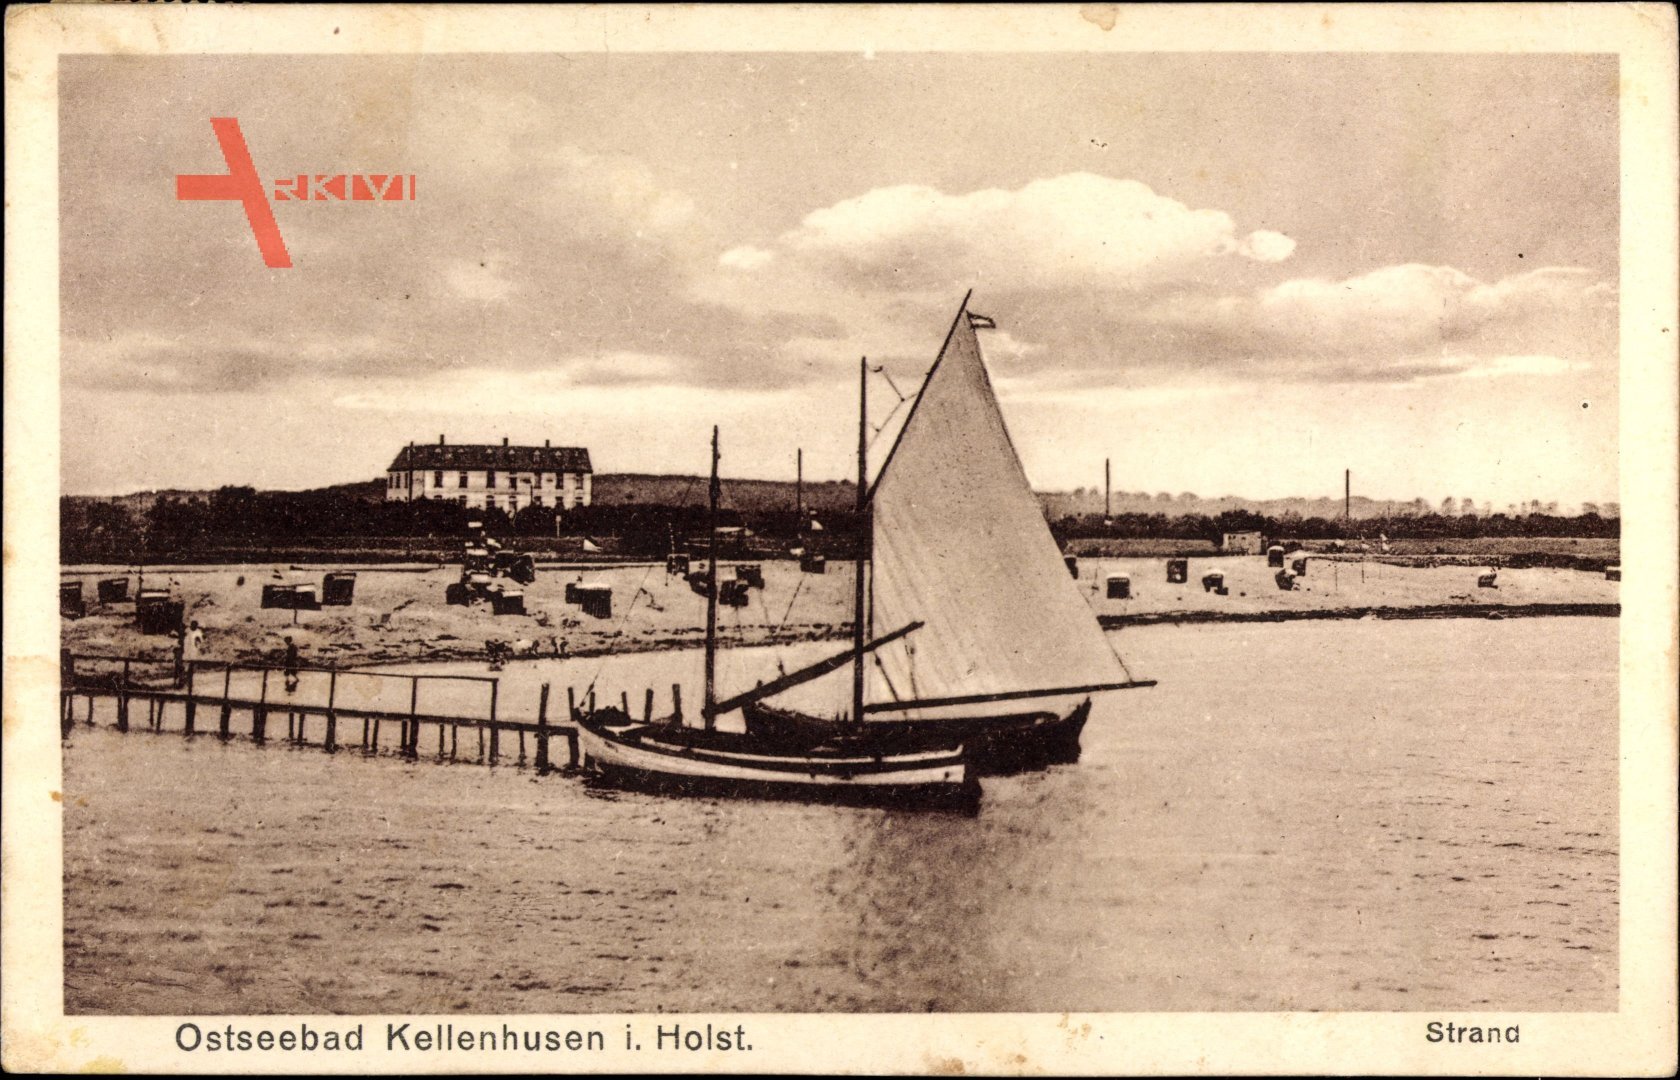 Kellenhusen an der Ostsee in Ostholstein, Blick auf den Strand, Steg, Boot